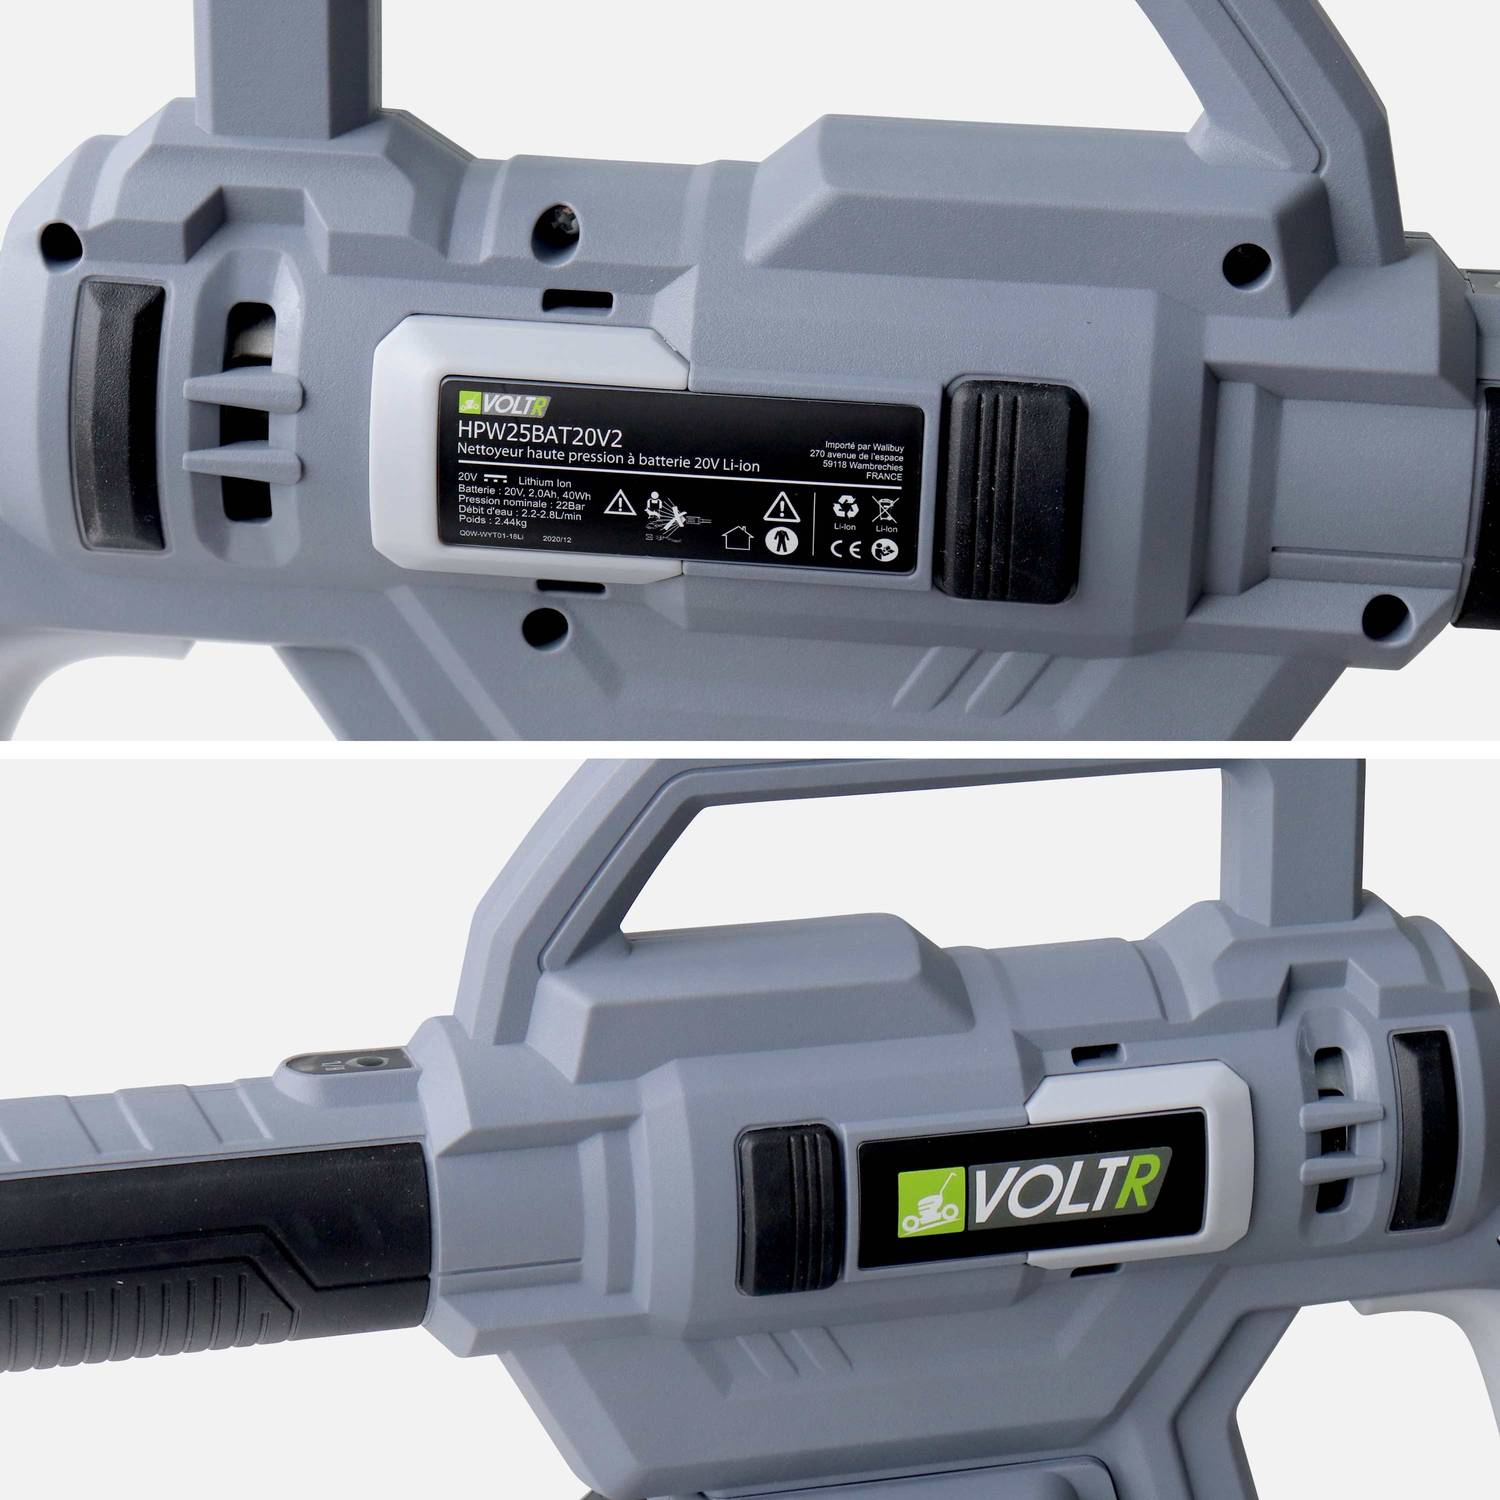 VOLTR - Lavadora de alta pressão de 25 bar com bateria de 20 V - kit completo de acessórios para escovas, bocal de pulverização variável, depósito de detergente, bateria e carregador incluídos Photo6